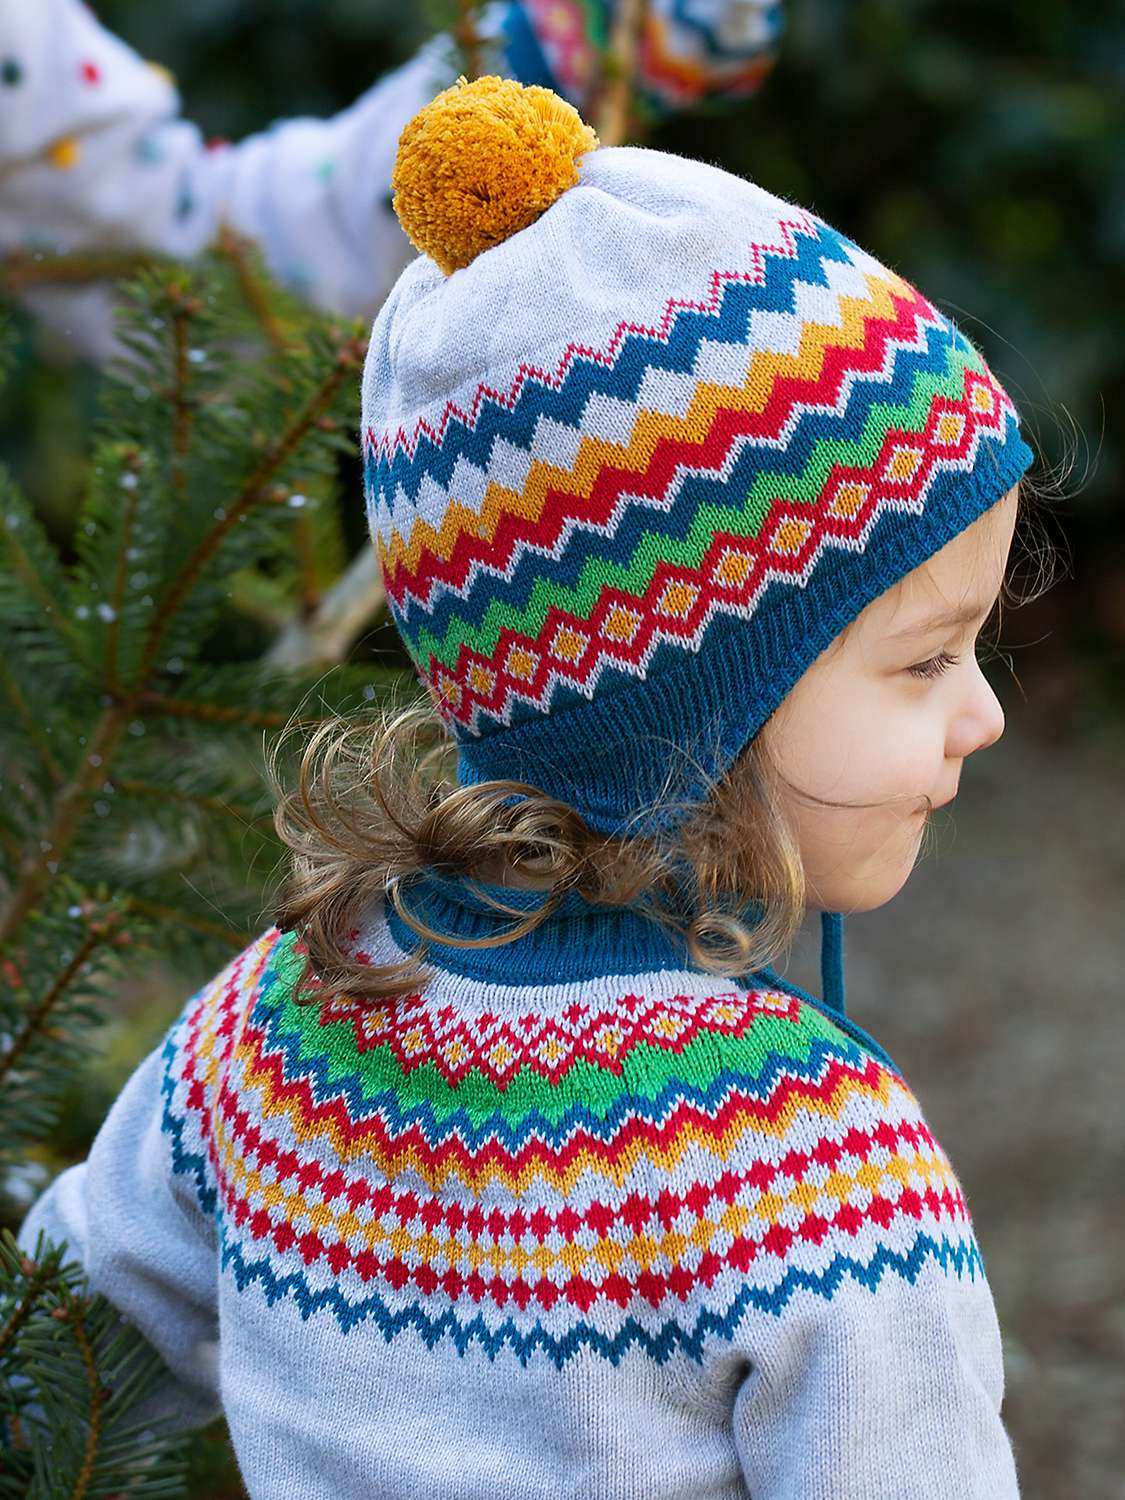 Buy Frugi Baby Fairisle Organic Cotton Knitted Hat & Mitten Set, Grey Marl/Multi Online at johnlewis.com